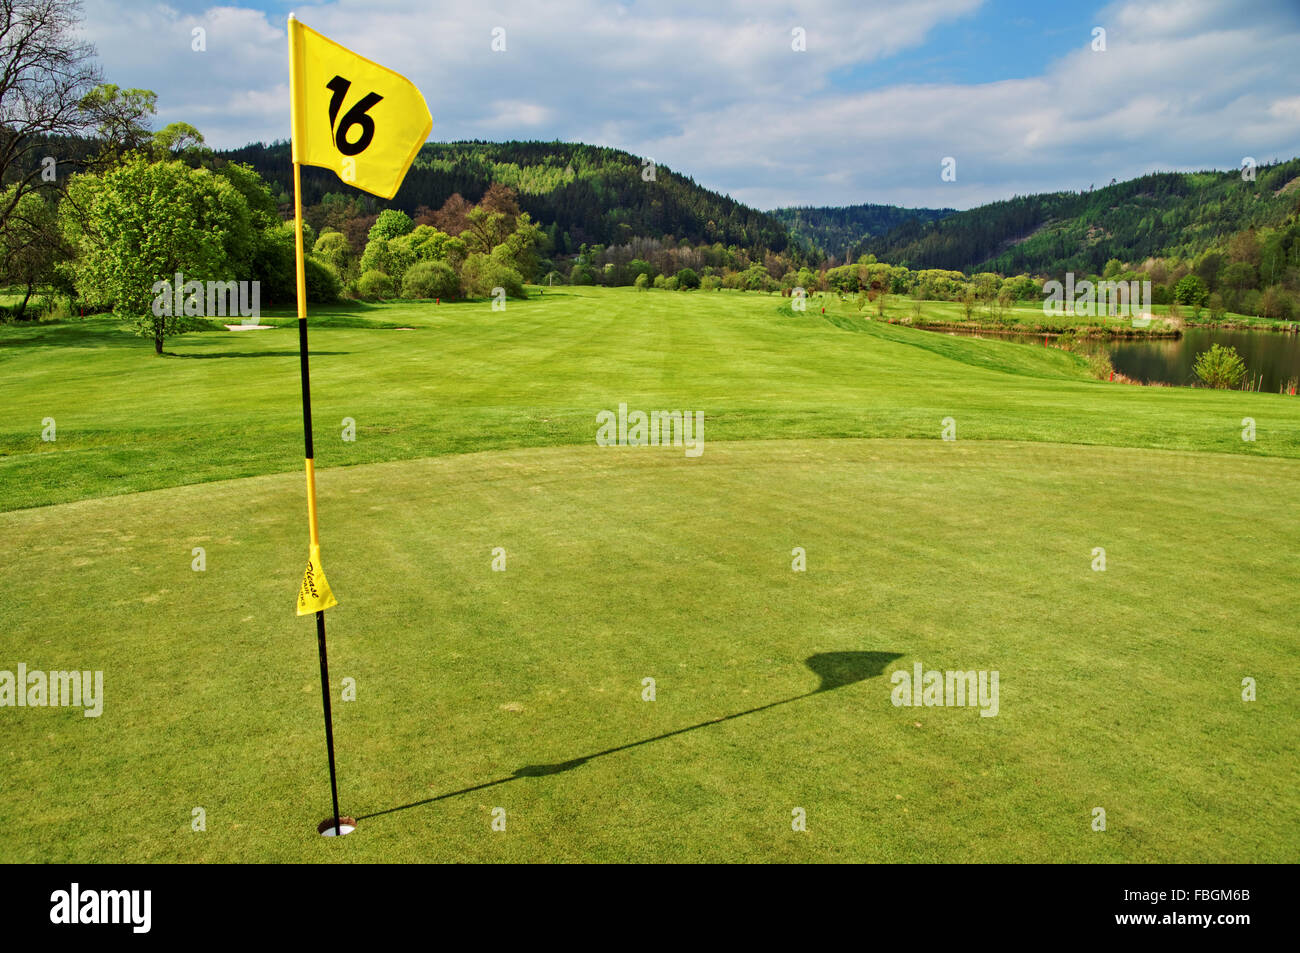 Bandiera gialla nel foro sul verde del campo da golf, fairway accanto ad un laghetto, delle montagne boscose in background Foto Stock